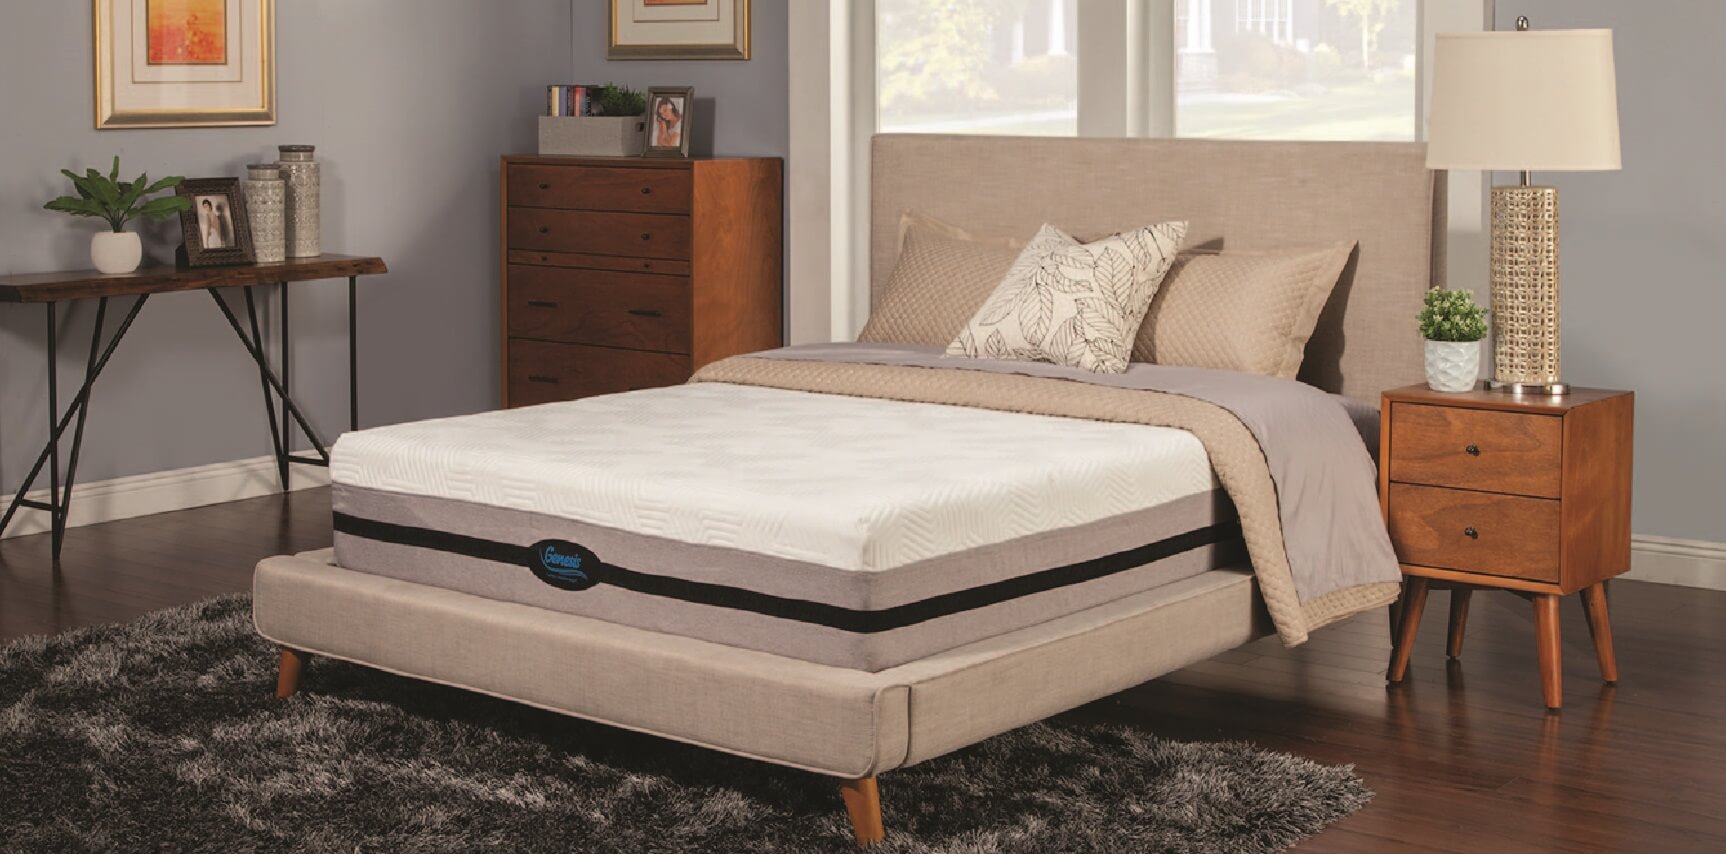 reviews for genesis 10g mattress